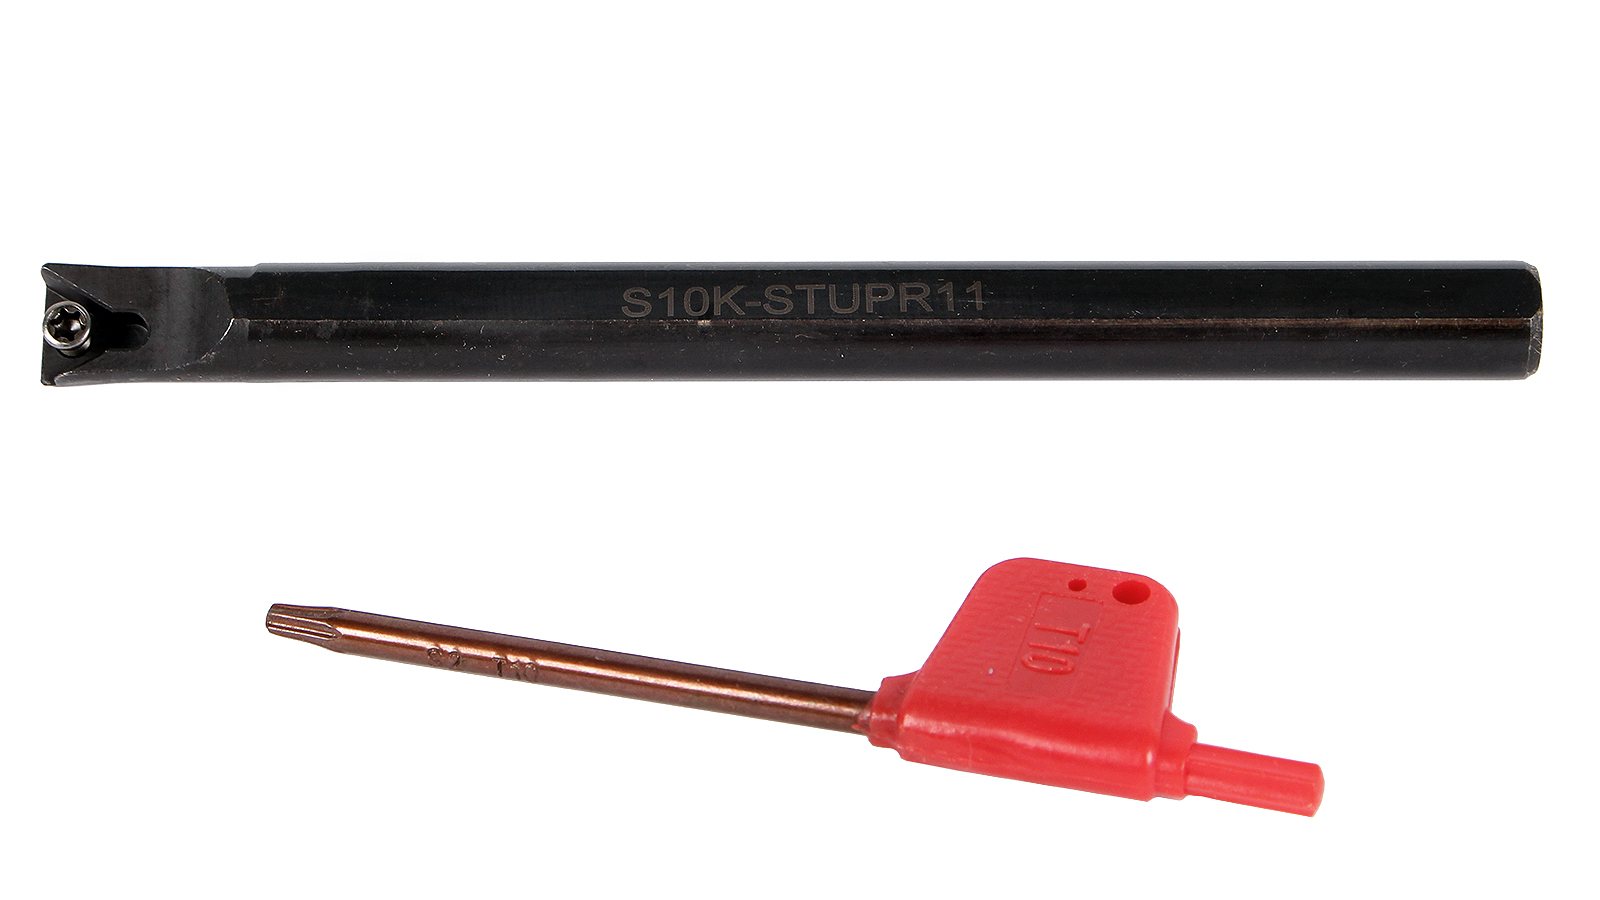 Резец токарный расточной для сквозных и глухих отверстий S10K-STUPR11 токарный расточной резец станкоинструмент и оснастка